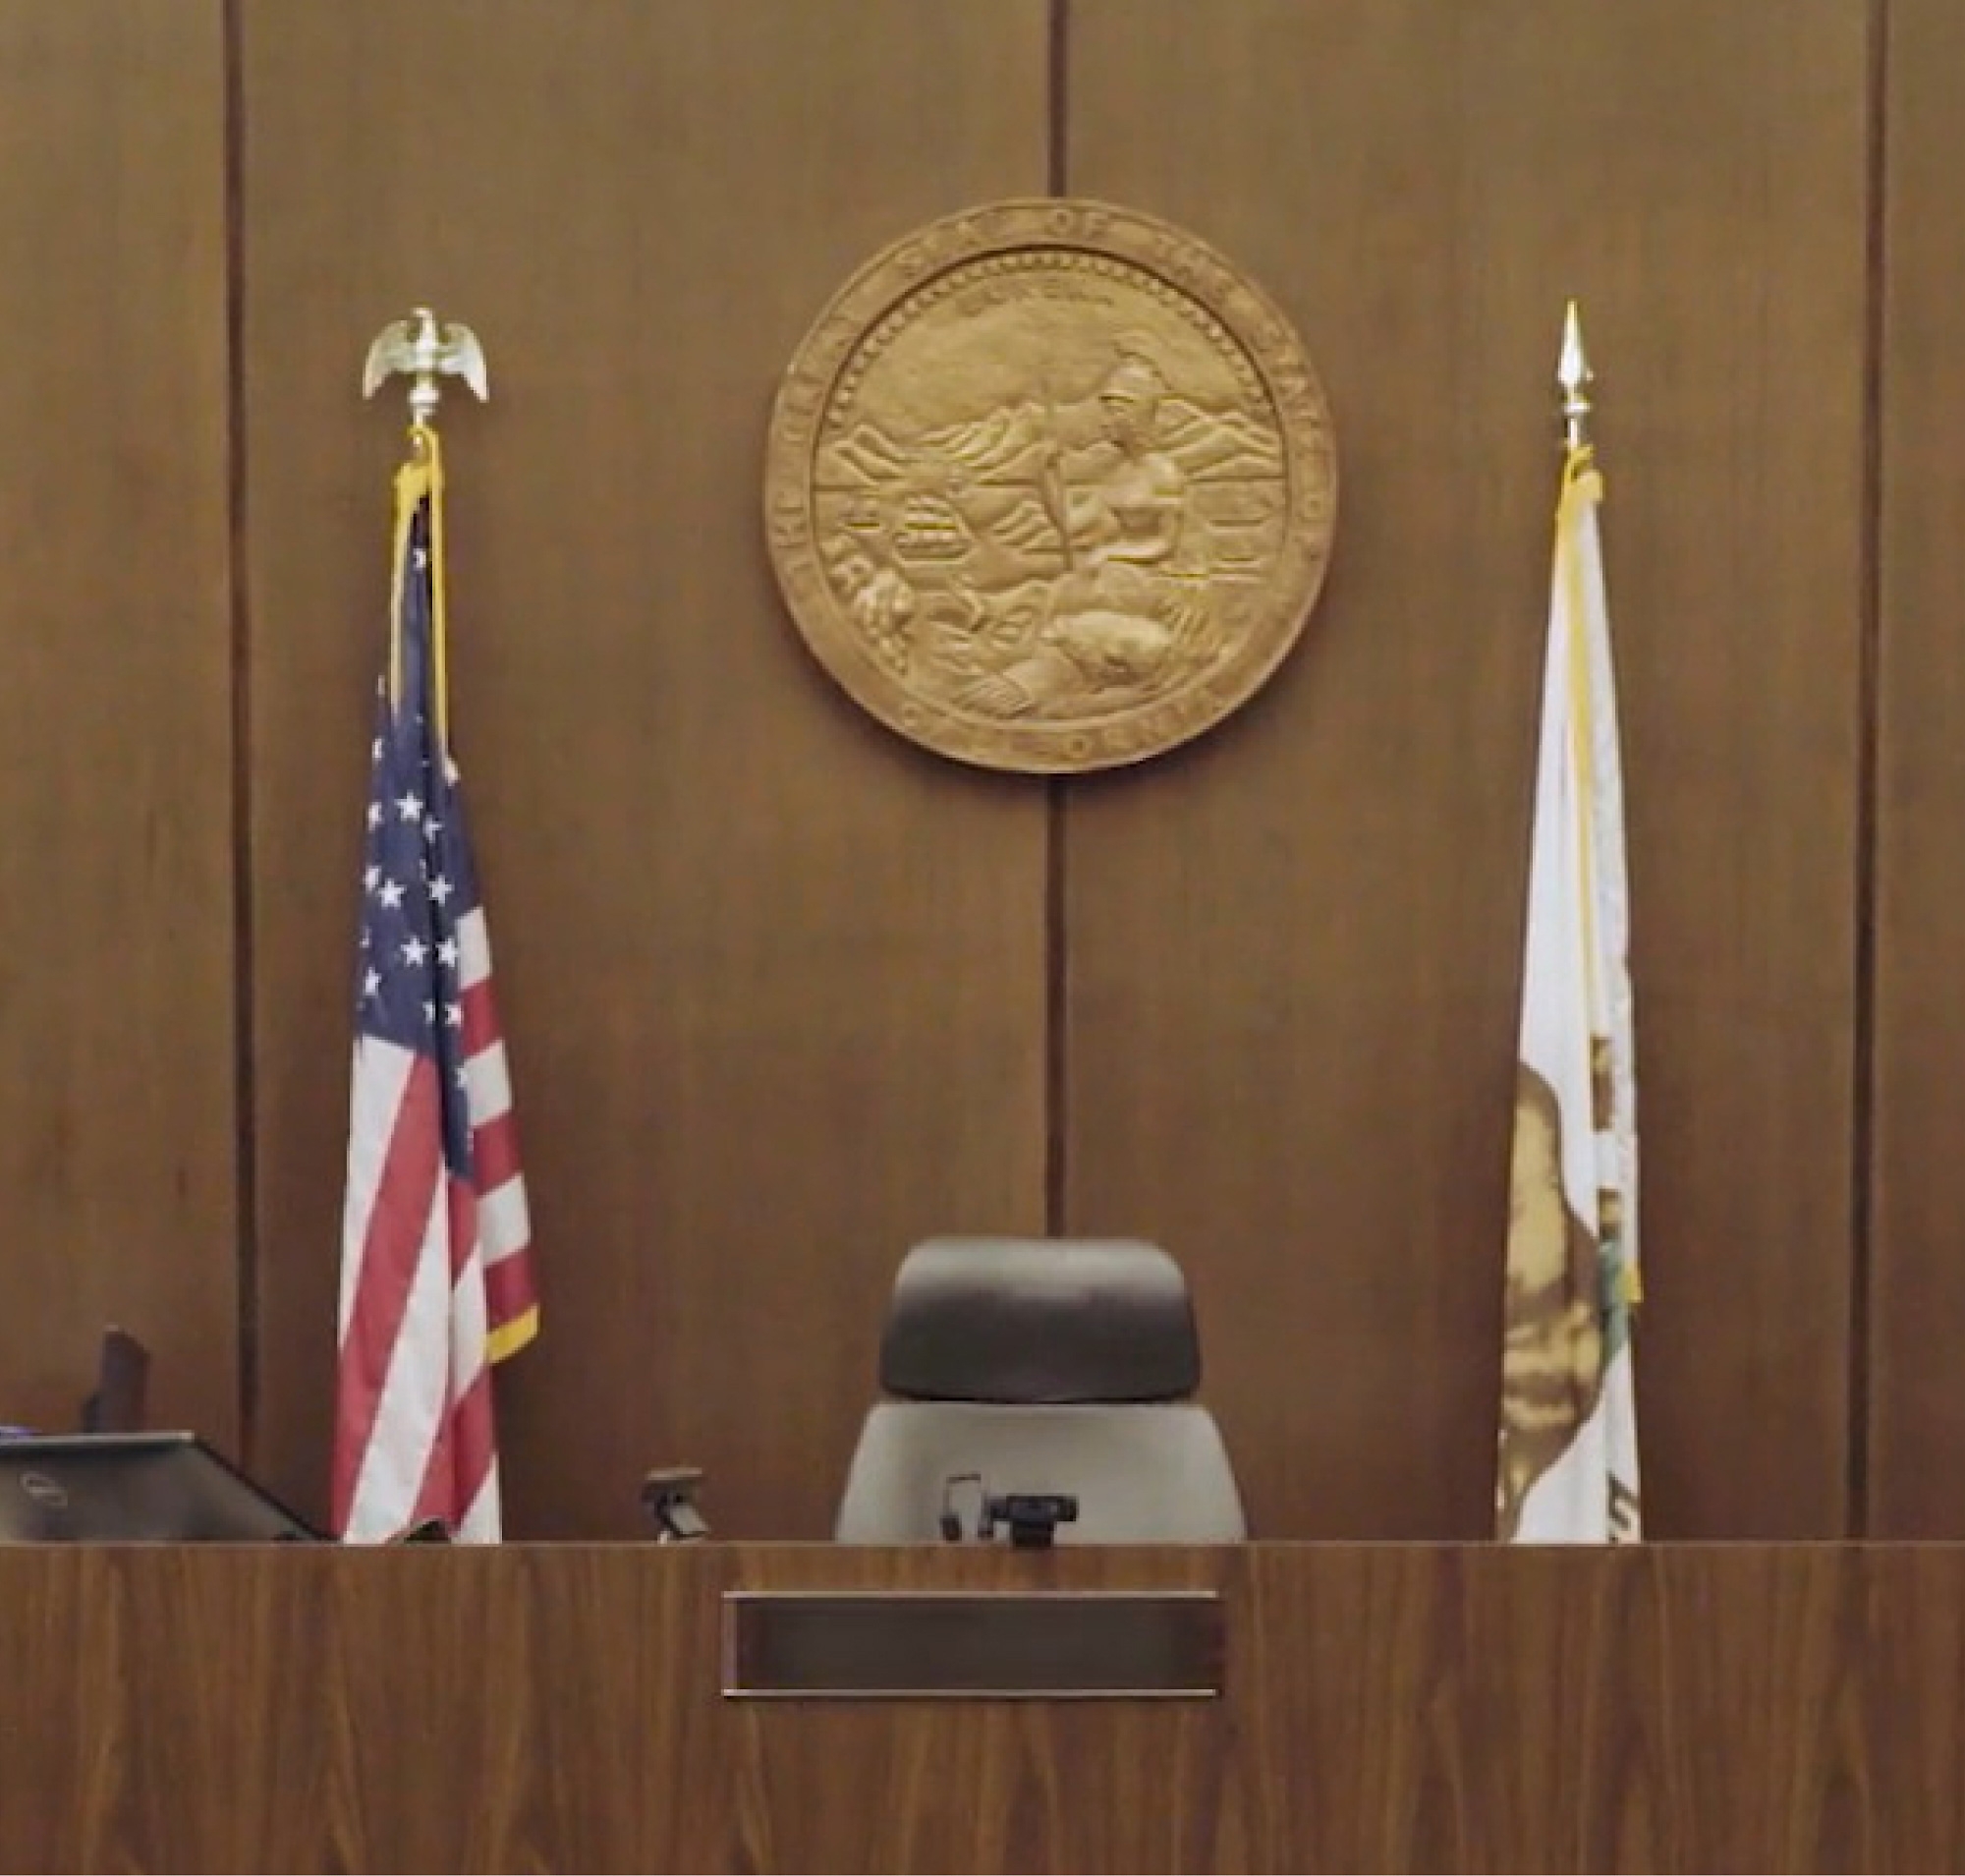 Pusty fotel sędziego w sali rozpraw z pieczęcią stanową zawieszoną na ścianie, otoczoną flagami Stanów Zjednoczonych i stanu.